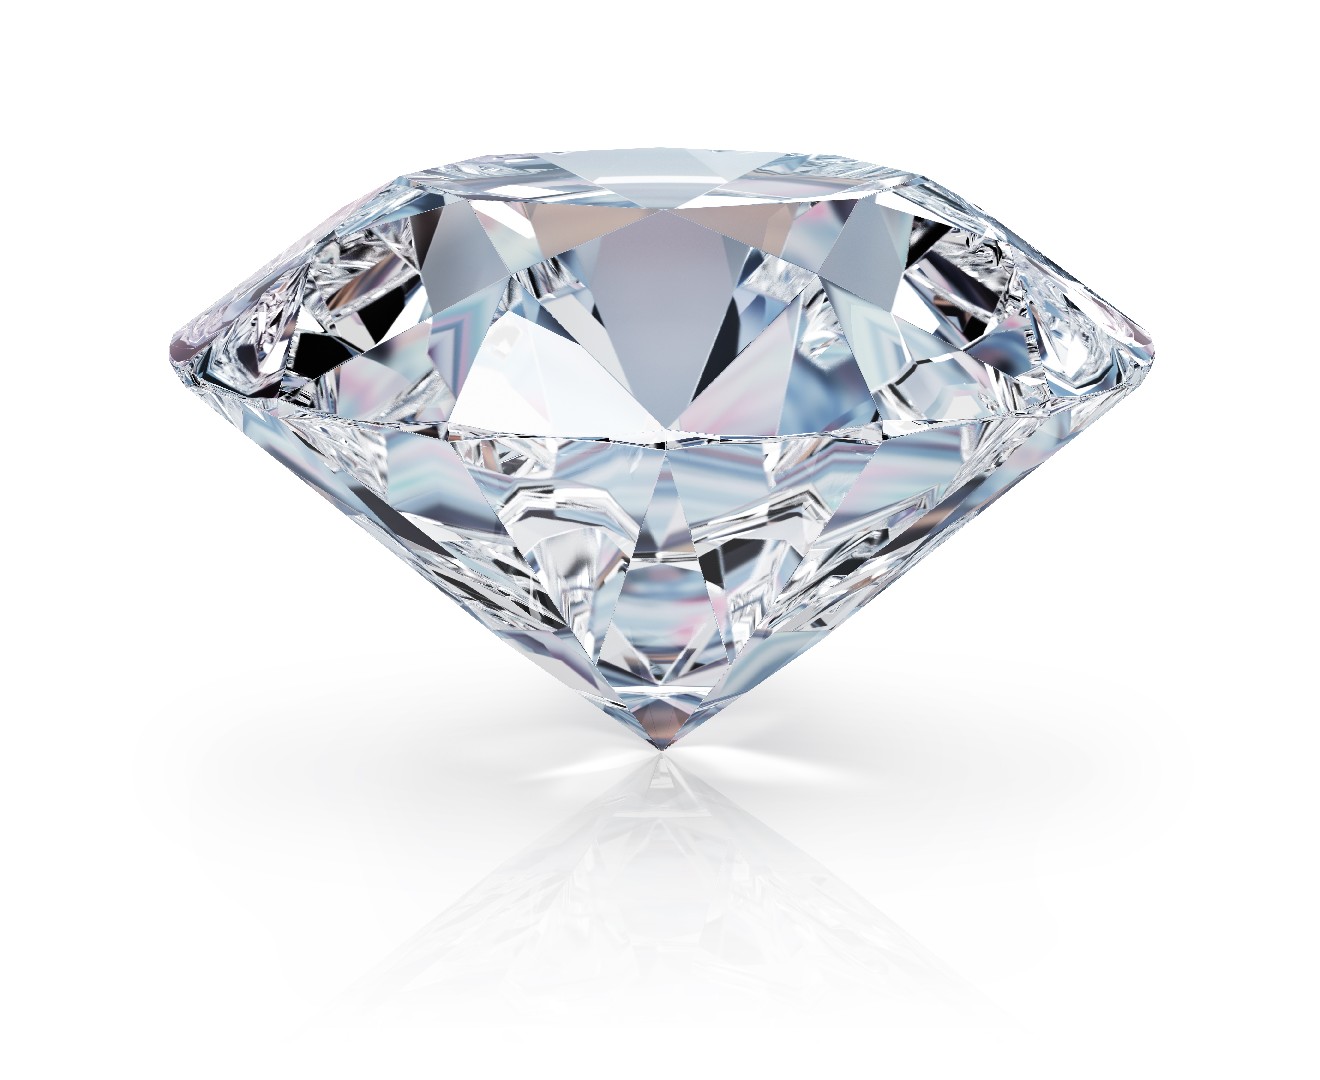 Diamant (pierre précieuse) (Diamond gemstone)